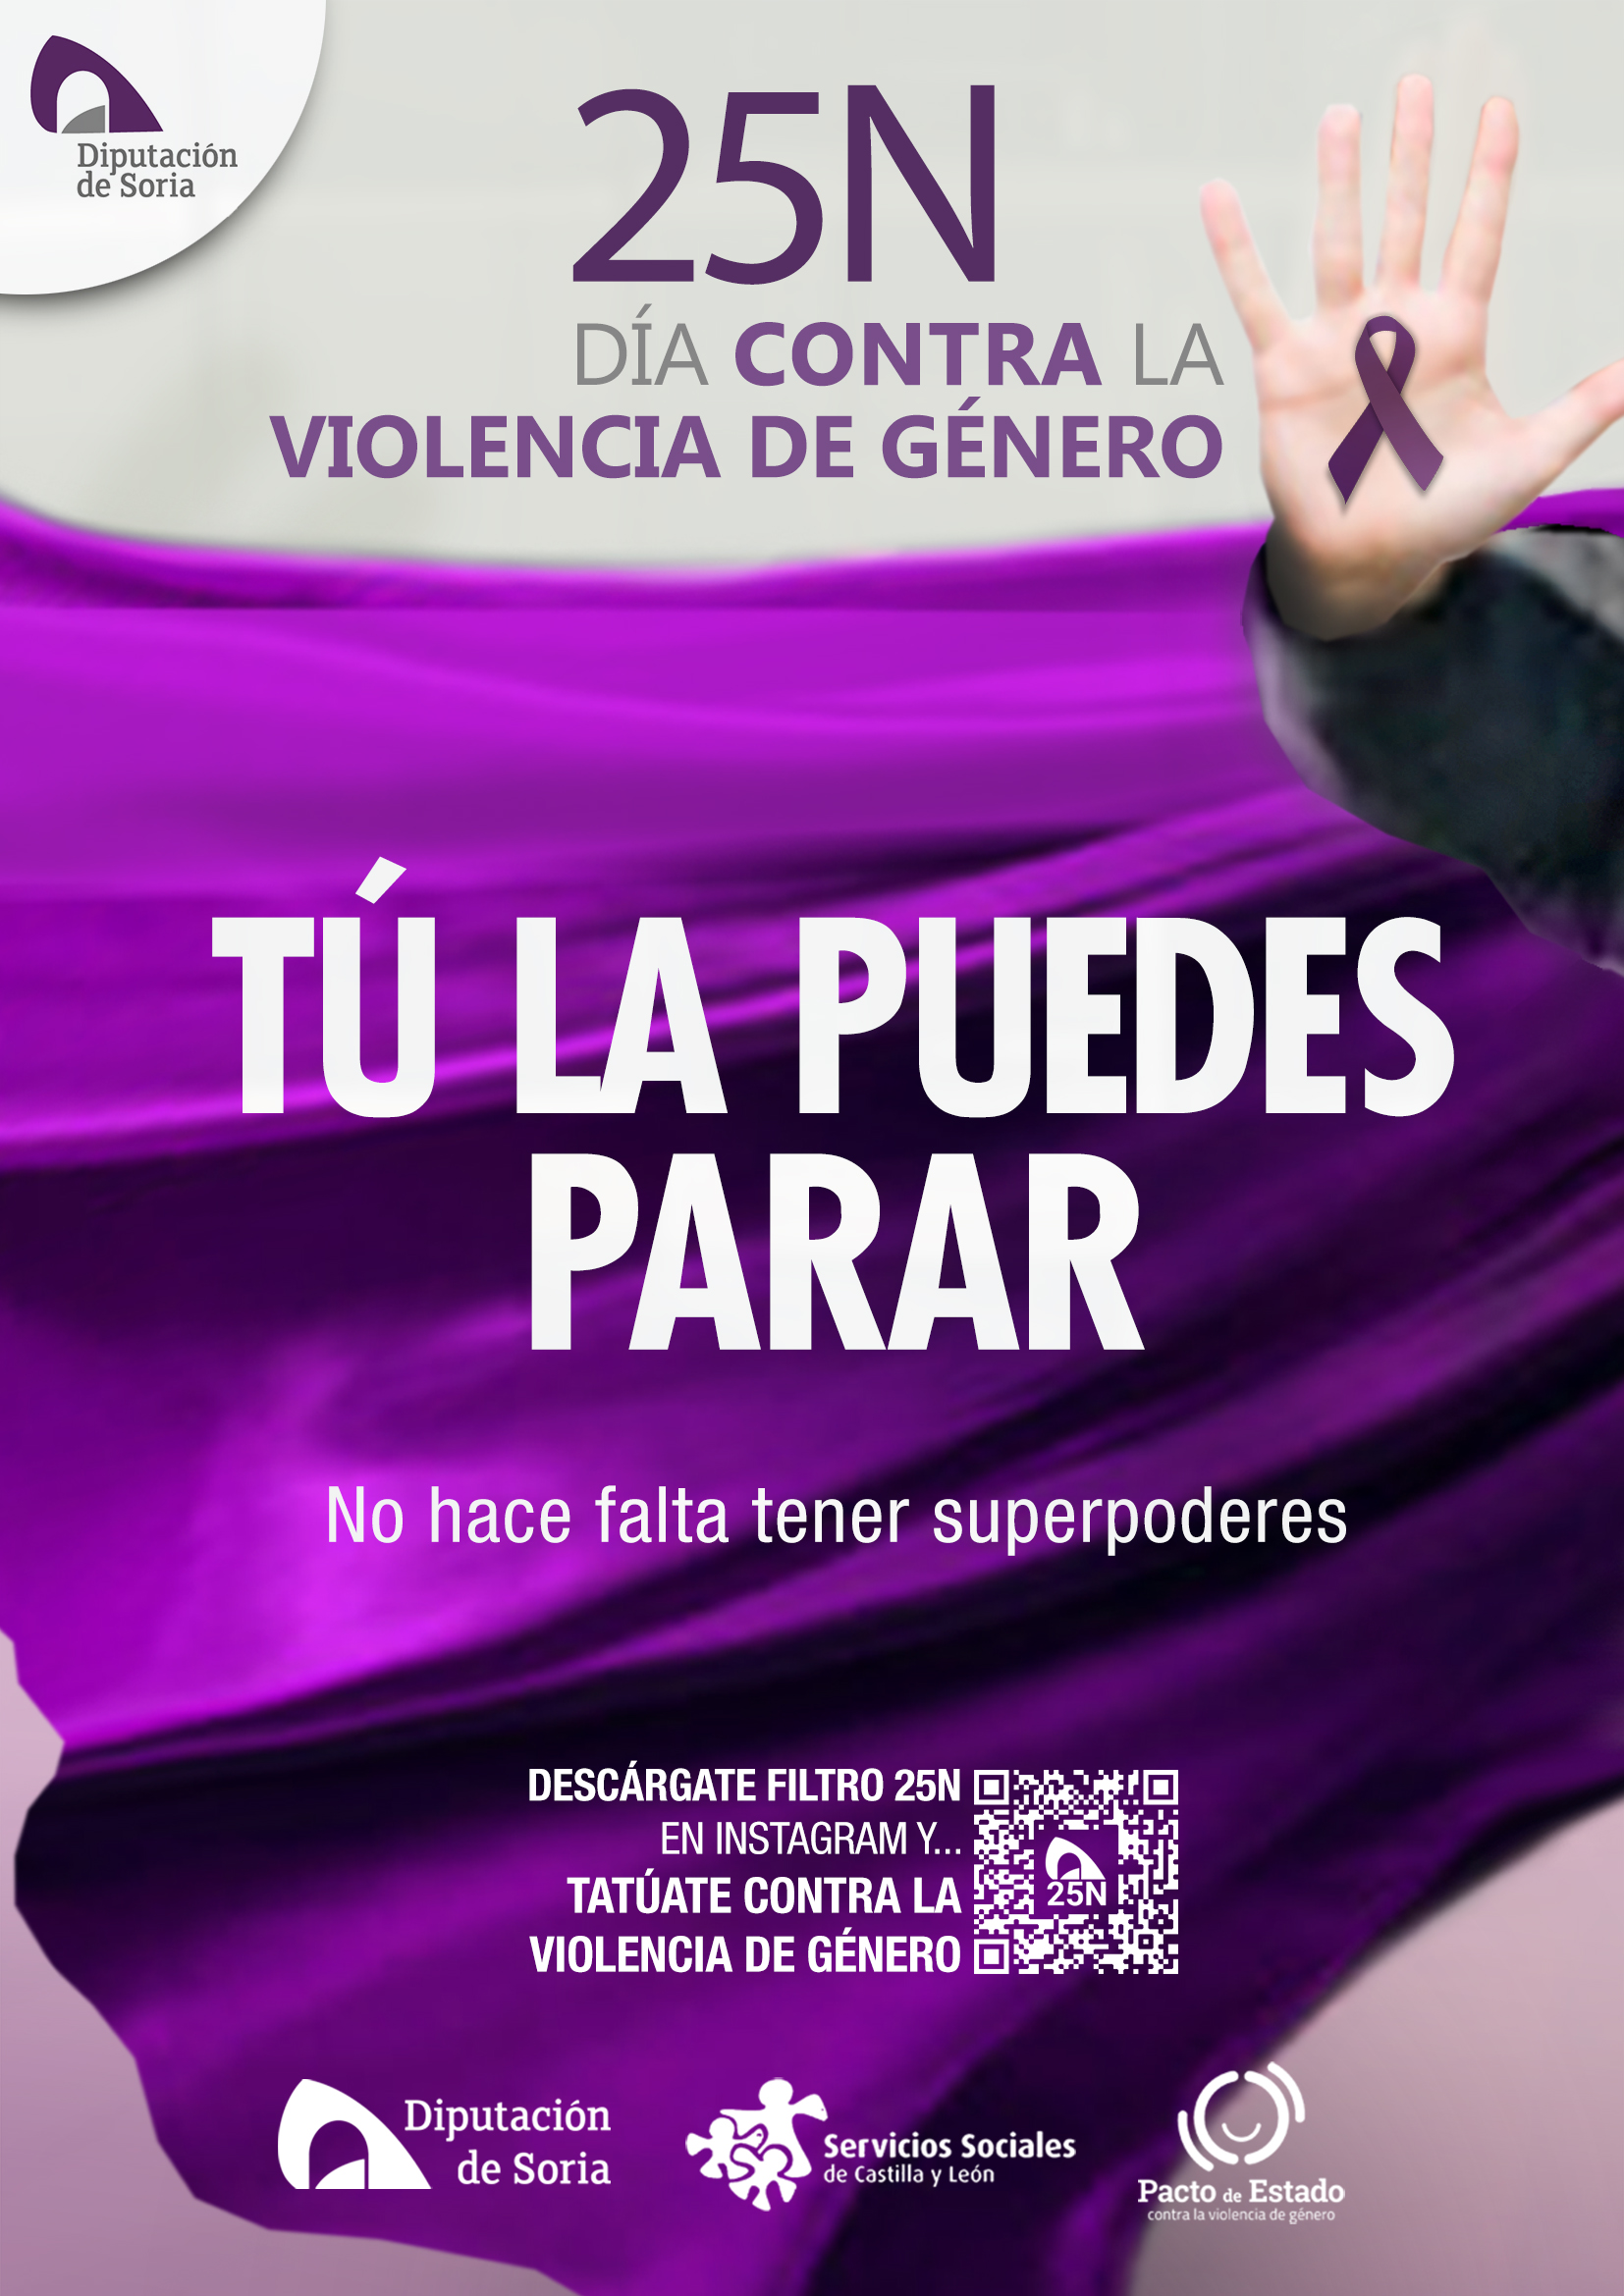 Diputación de Soria presenta la campaña Tú la puedes parar, el 25 de noviembre, Día Contra la Violencia de Género.